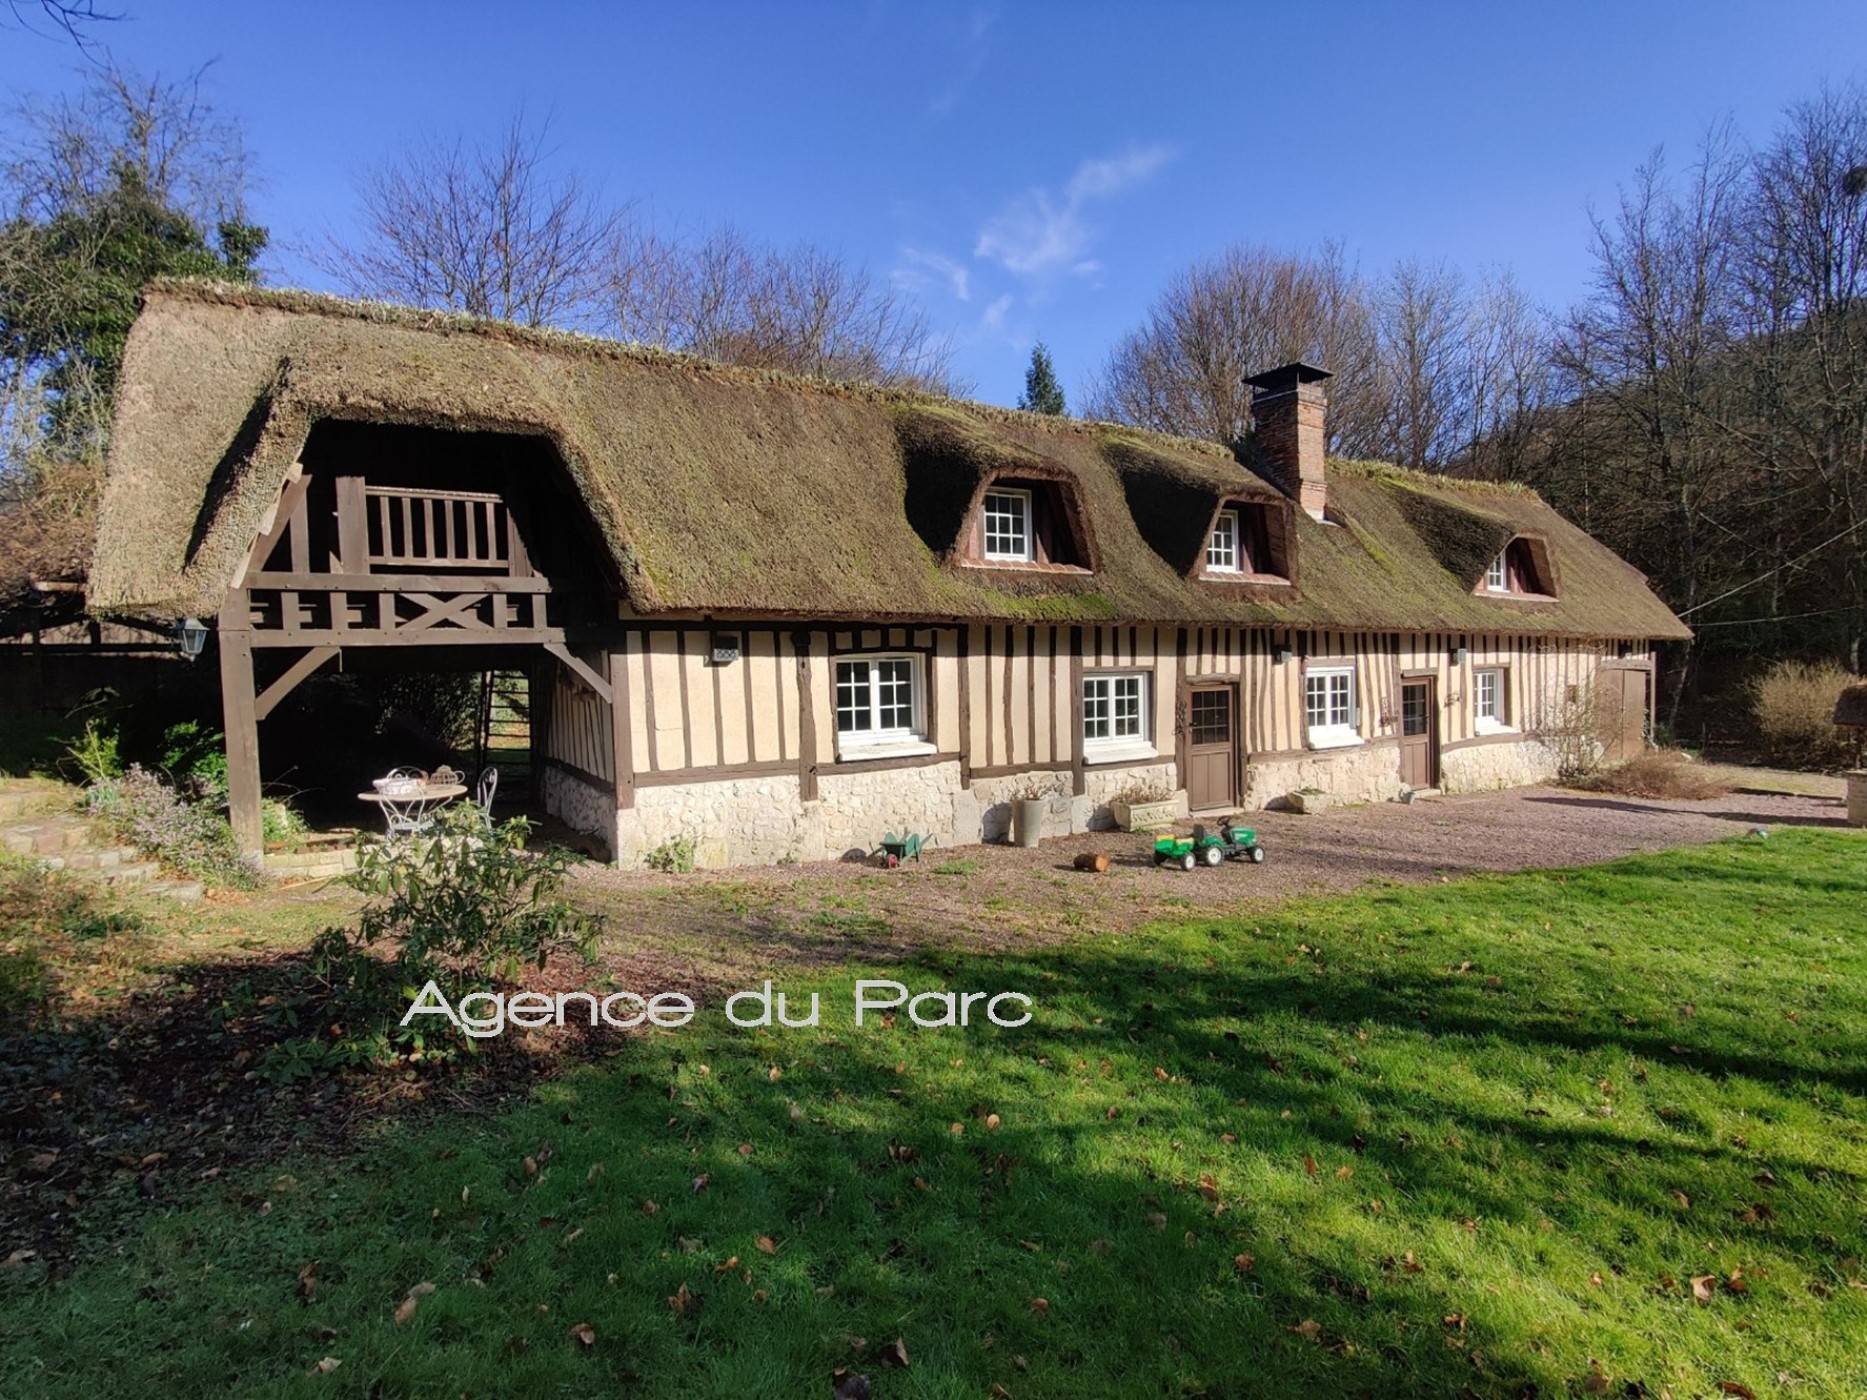 Vente d'une charmante maison normande, en très bon état, sur 5000 m² de terrain env, entre Caudebec en Caux et Yvetot, en Normandie